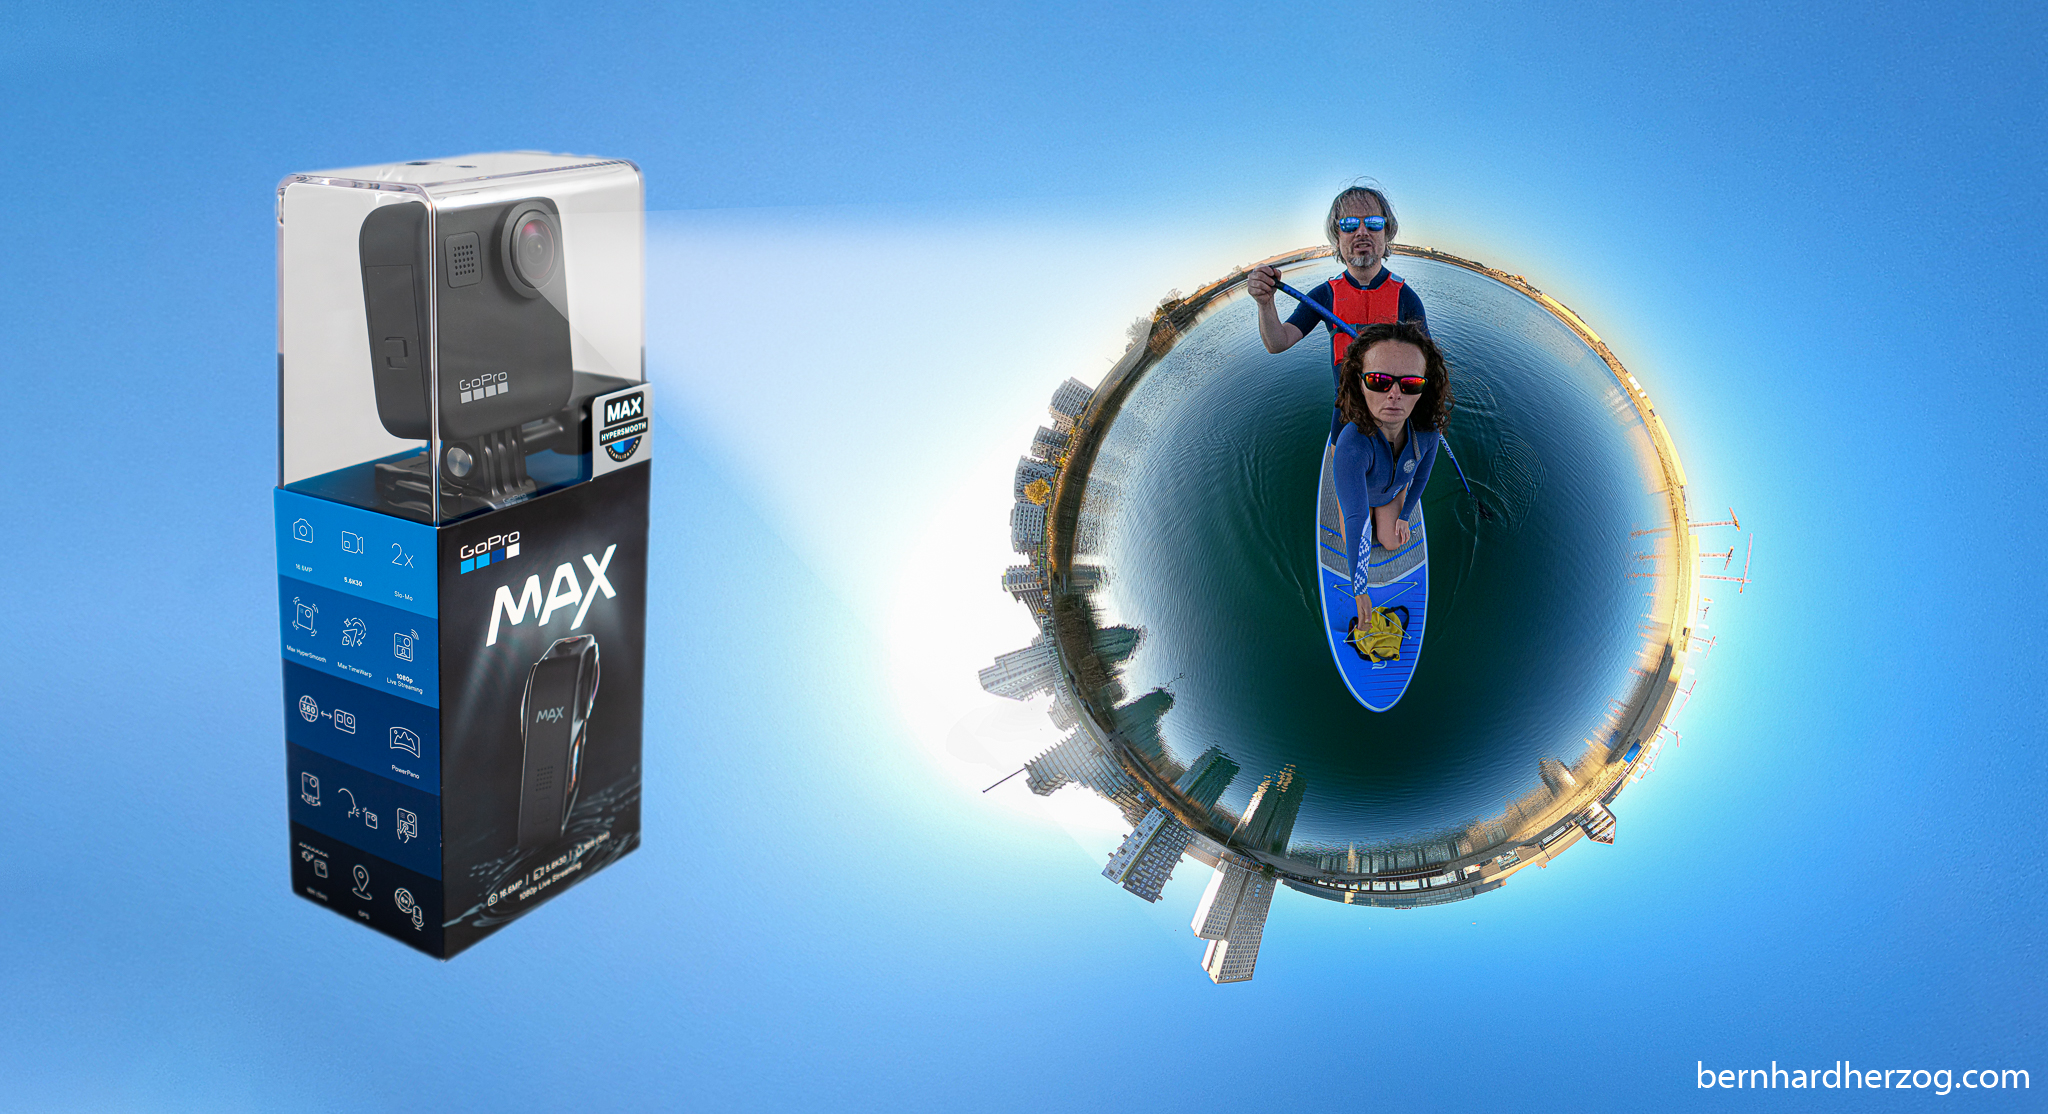 GoPro MAX im Test – die bessere GoPro 8/9? (Vergleich mit Insta360 und DJI Osmo Action)